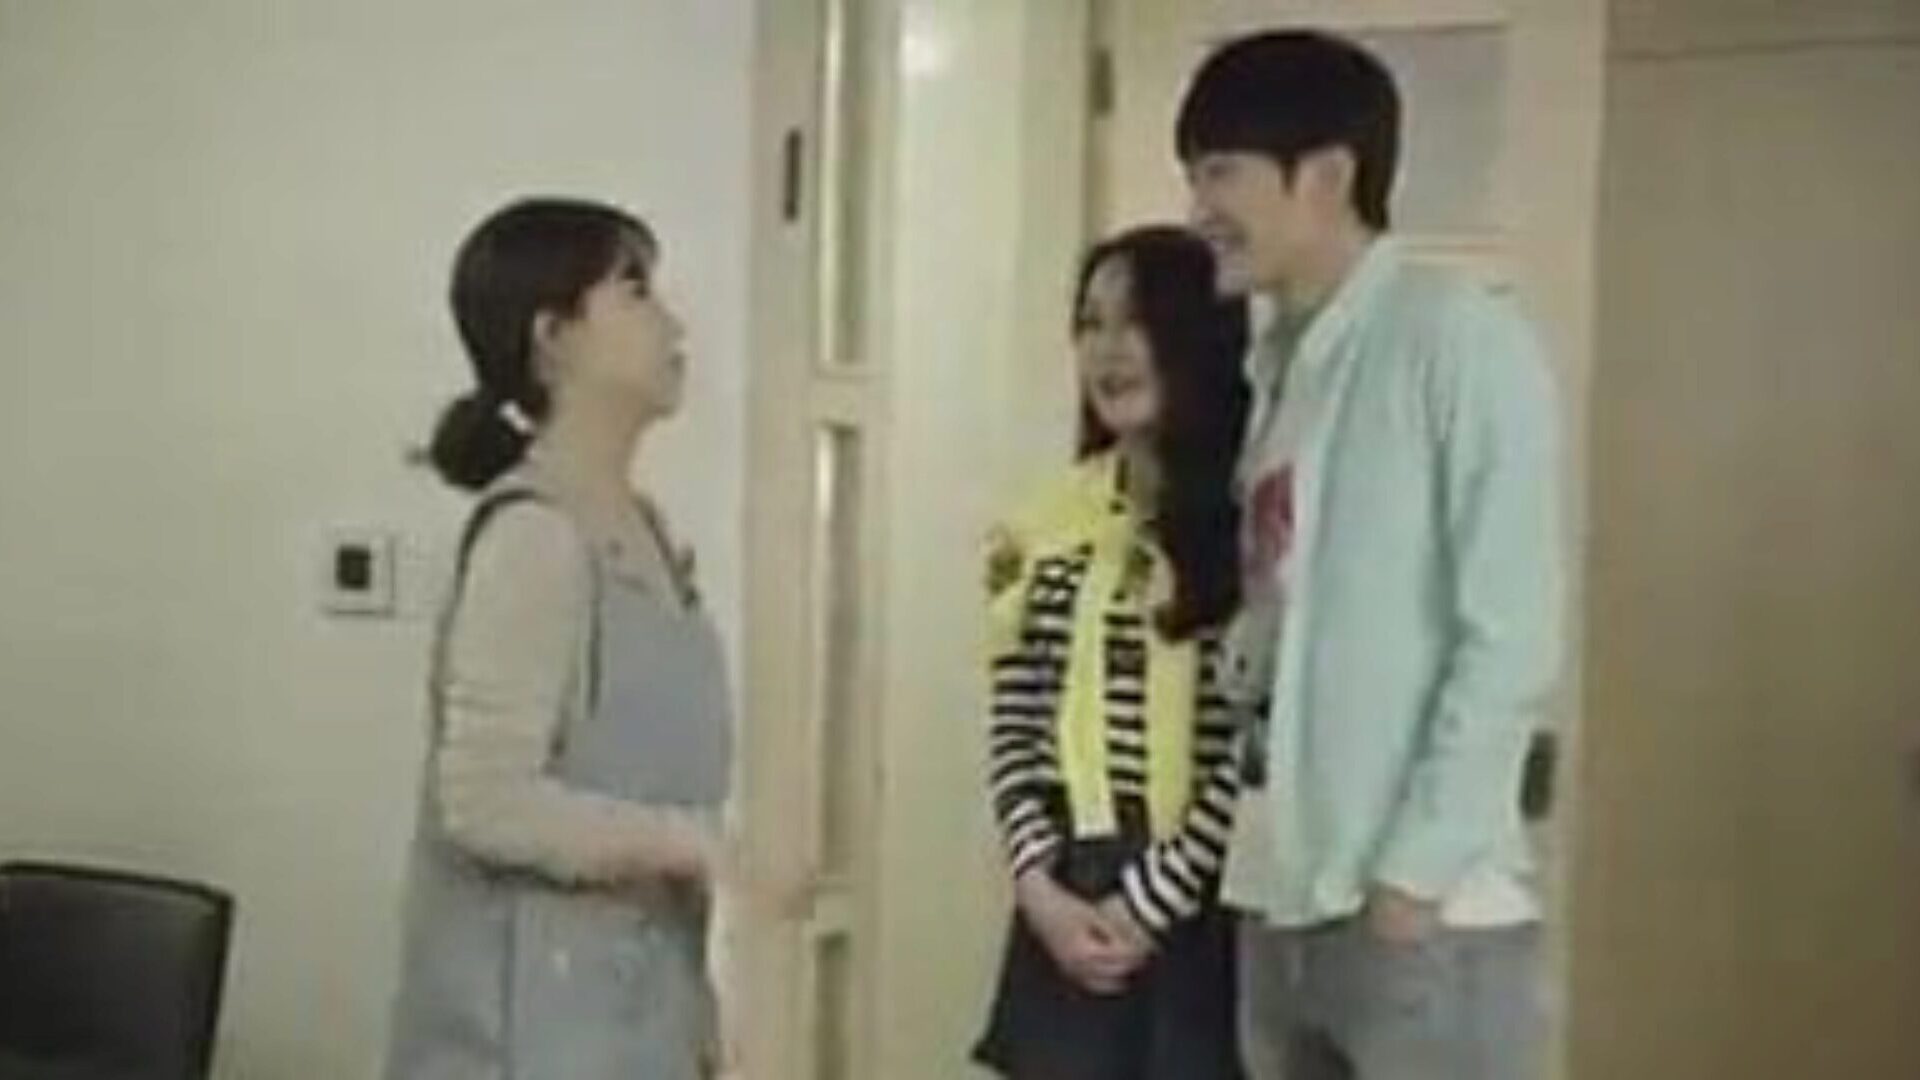 mamma og sønns venn knuller på kjøkkenet - koreansk film koreansk filmklipp - mamma og sønns venn knuller på kjøkkenet mens svigersønn slår med sin kjæreste i rommet